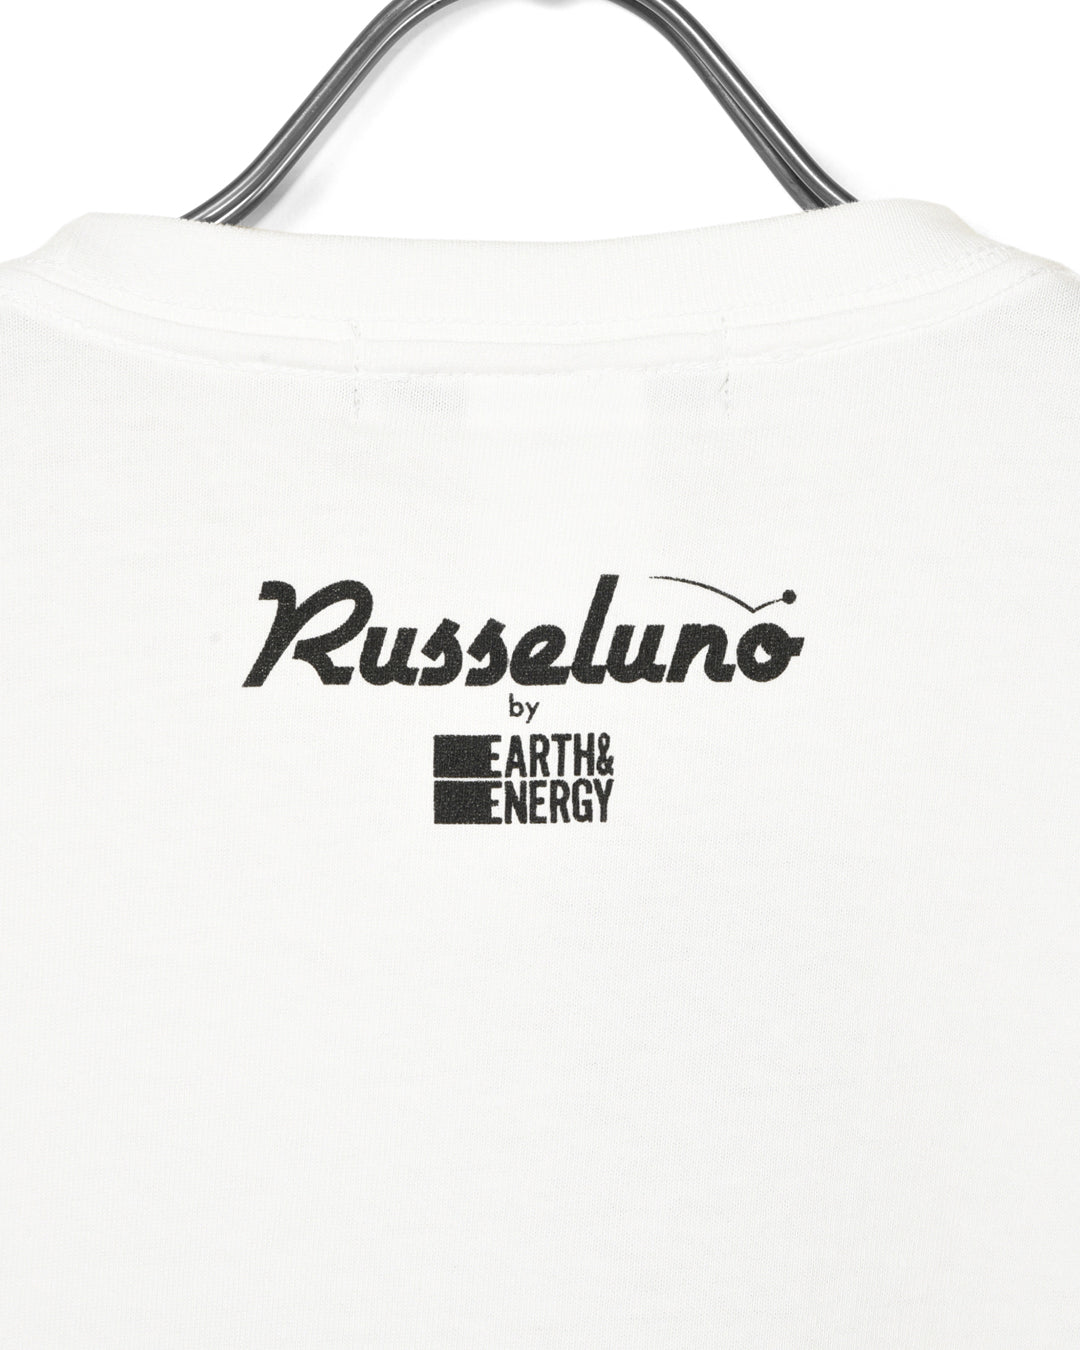 E＆E T恤的Russeluno